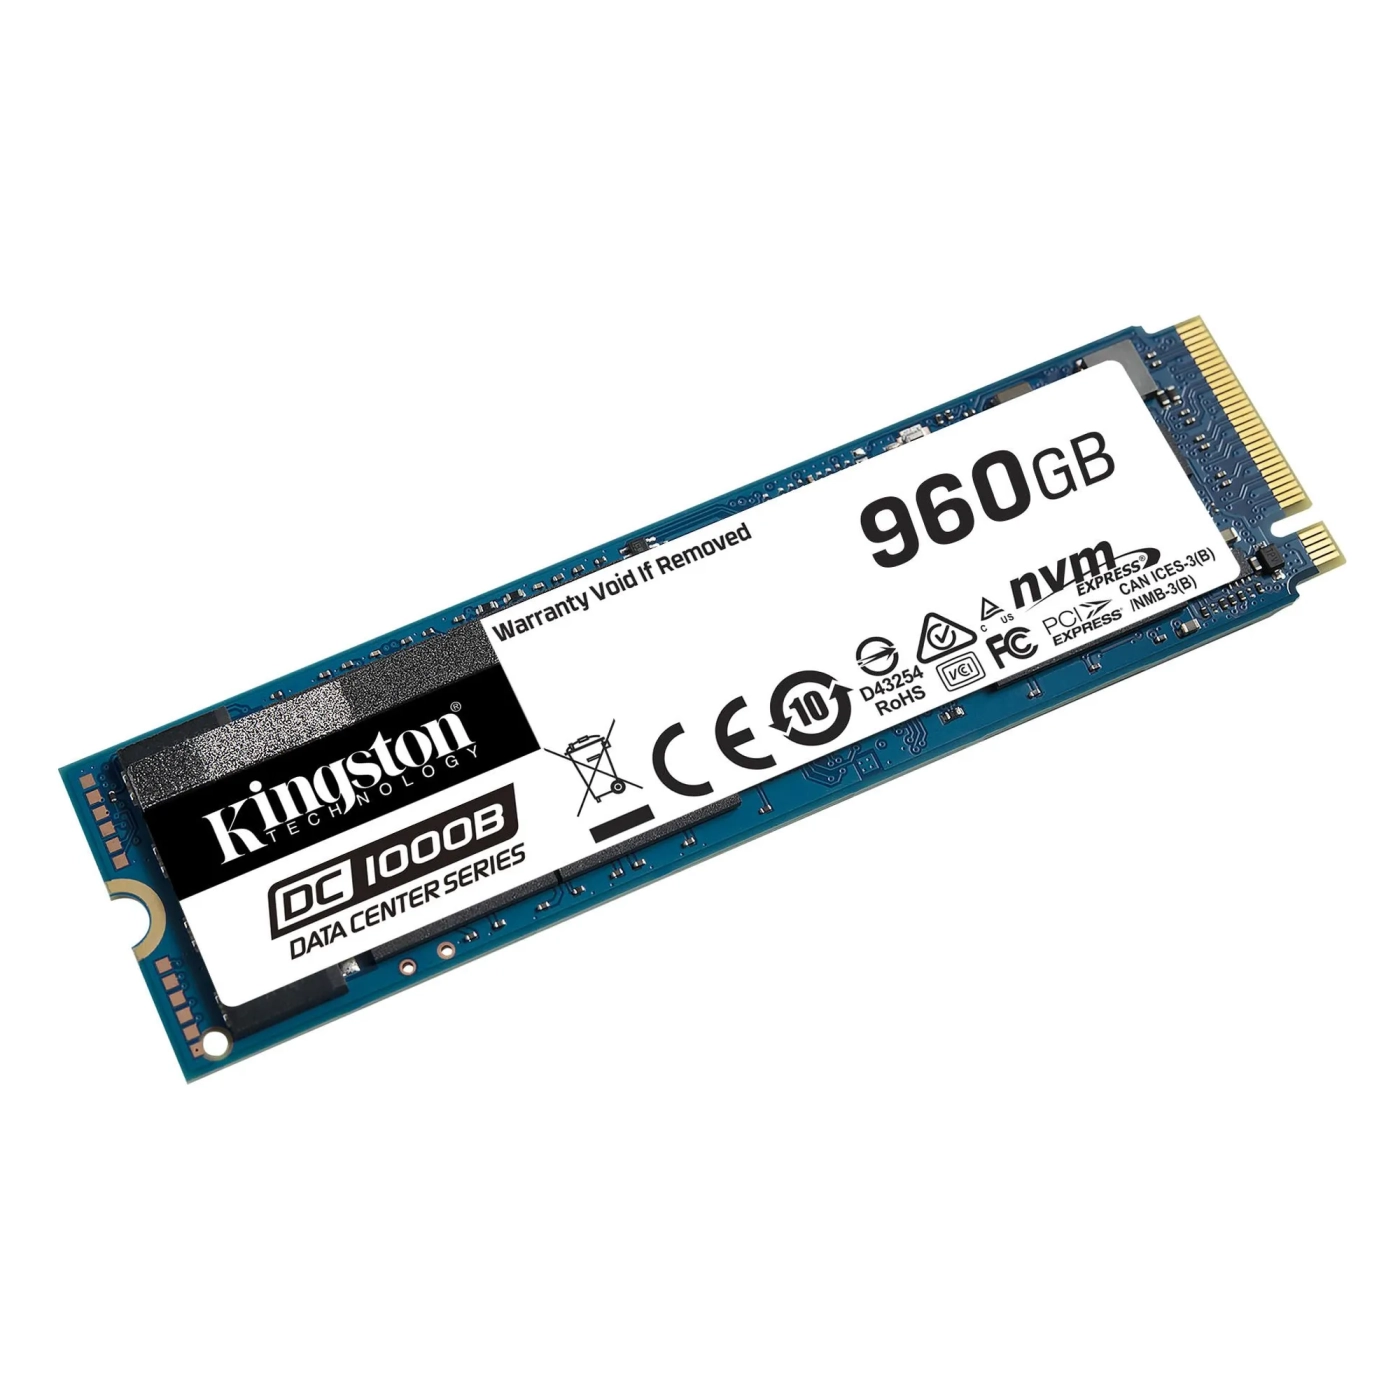 Купить SSD Kingston DC1000B 960GB M.2 NVMe PCIe 3.0 4x 2280 (SEDC1000BM8/960G) - фото 2